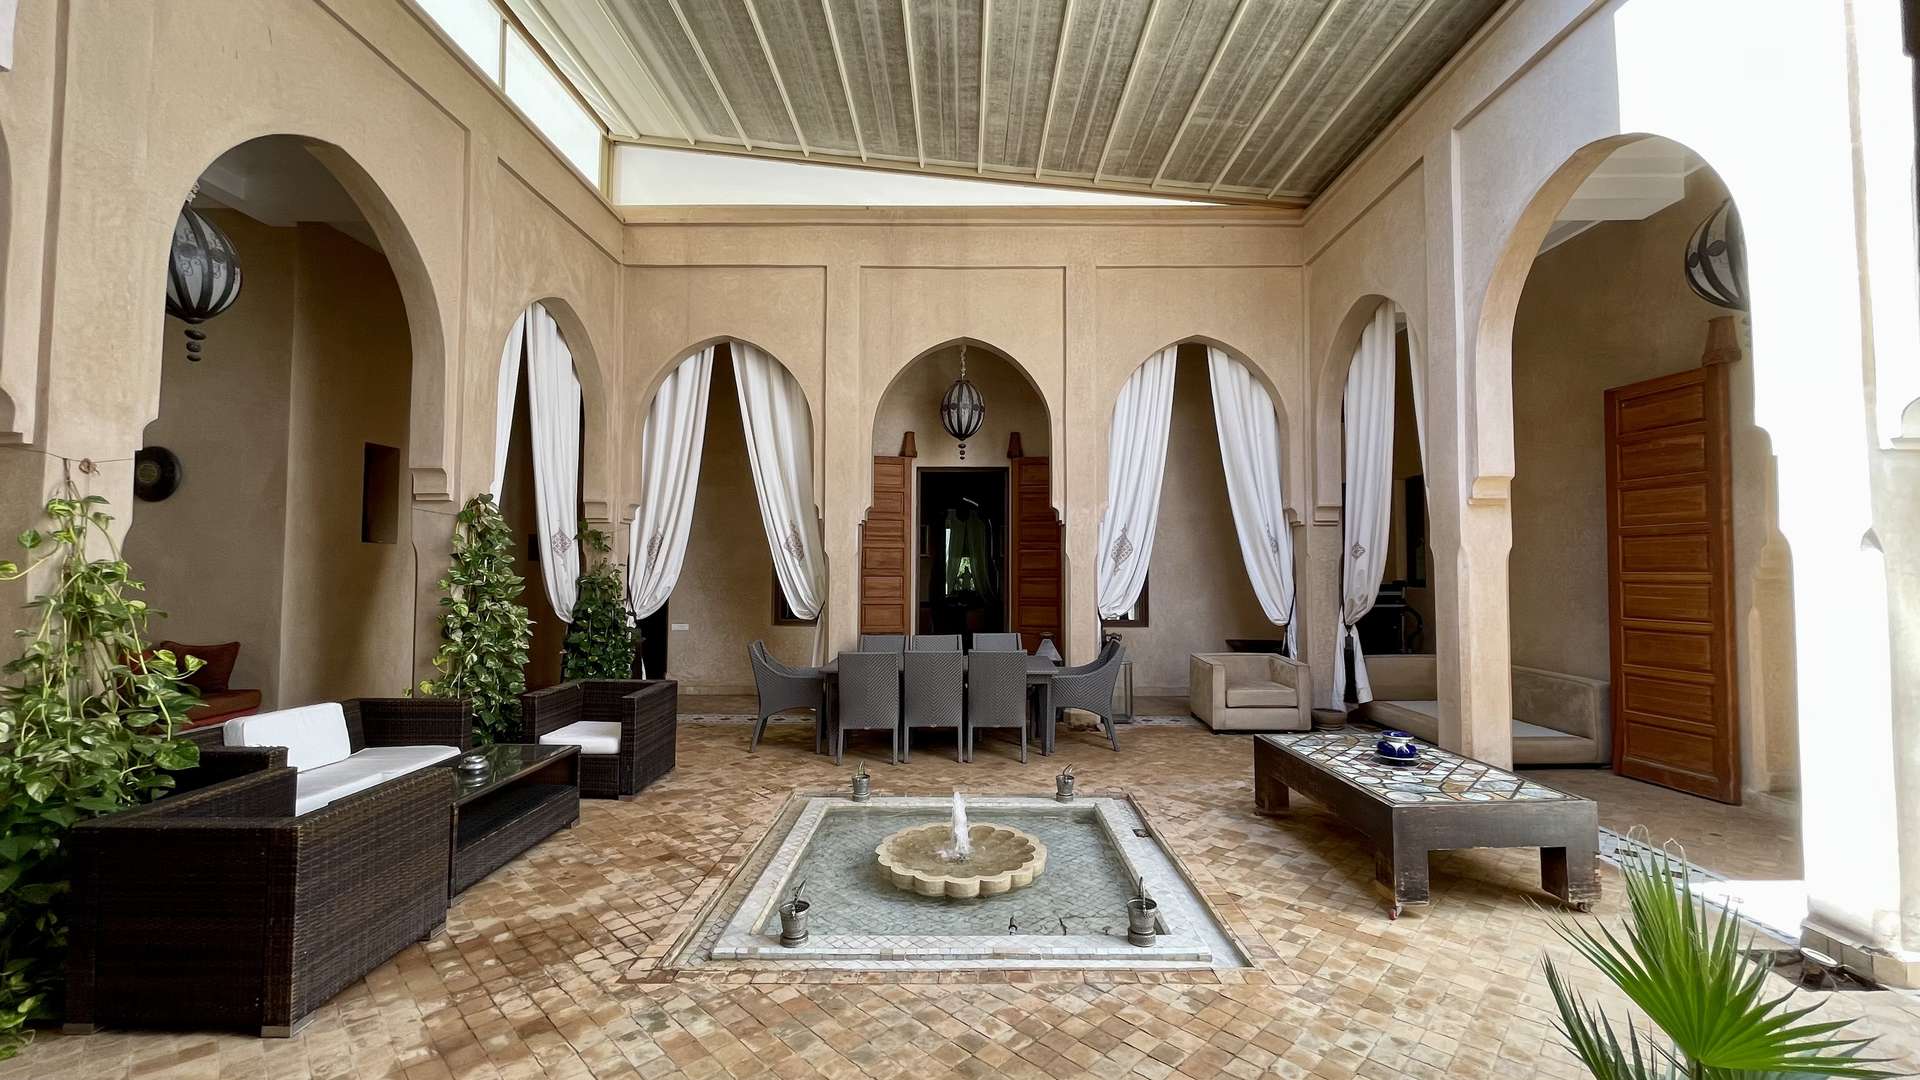 Vente,Villa,Somptueuse Villa de style Riad de plain-pied 4 suites sur un parc de 4200M2,Marrakech,Route d'Ouarzazate